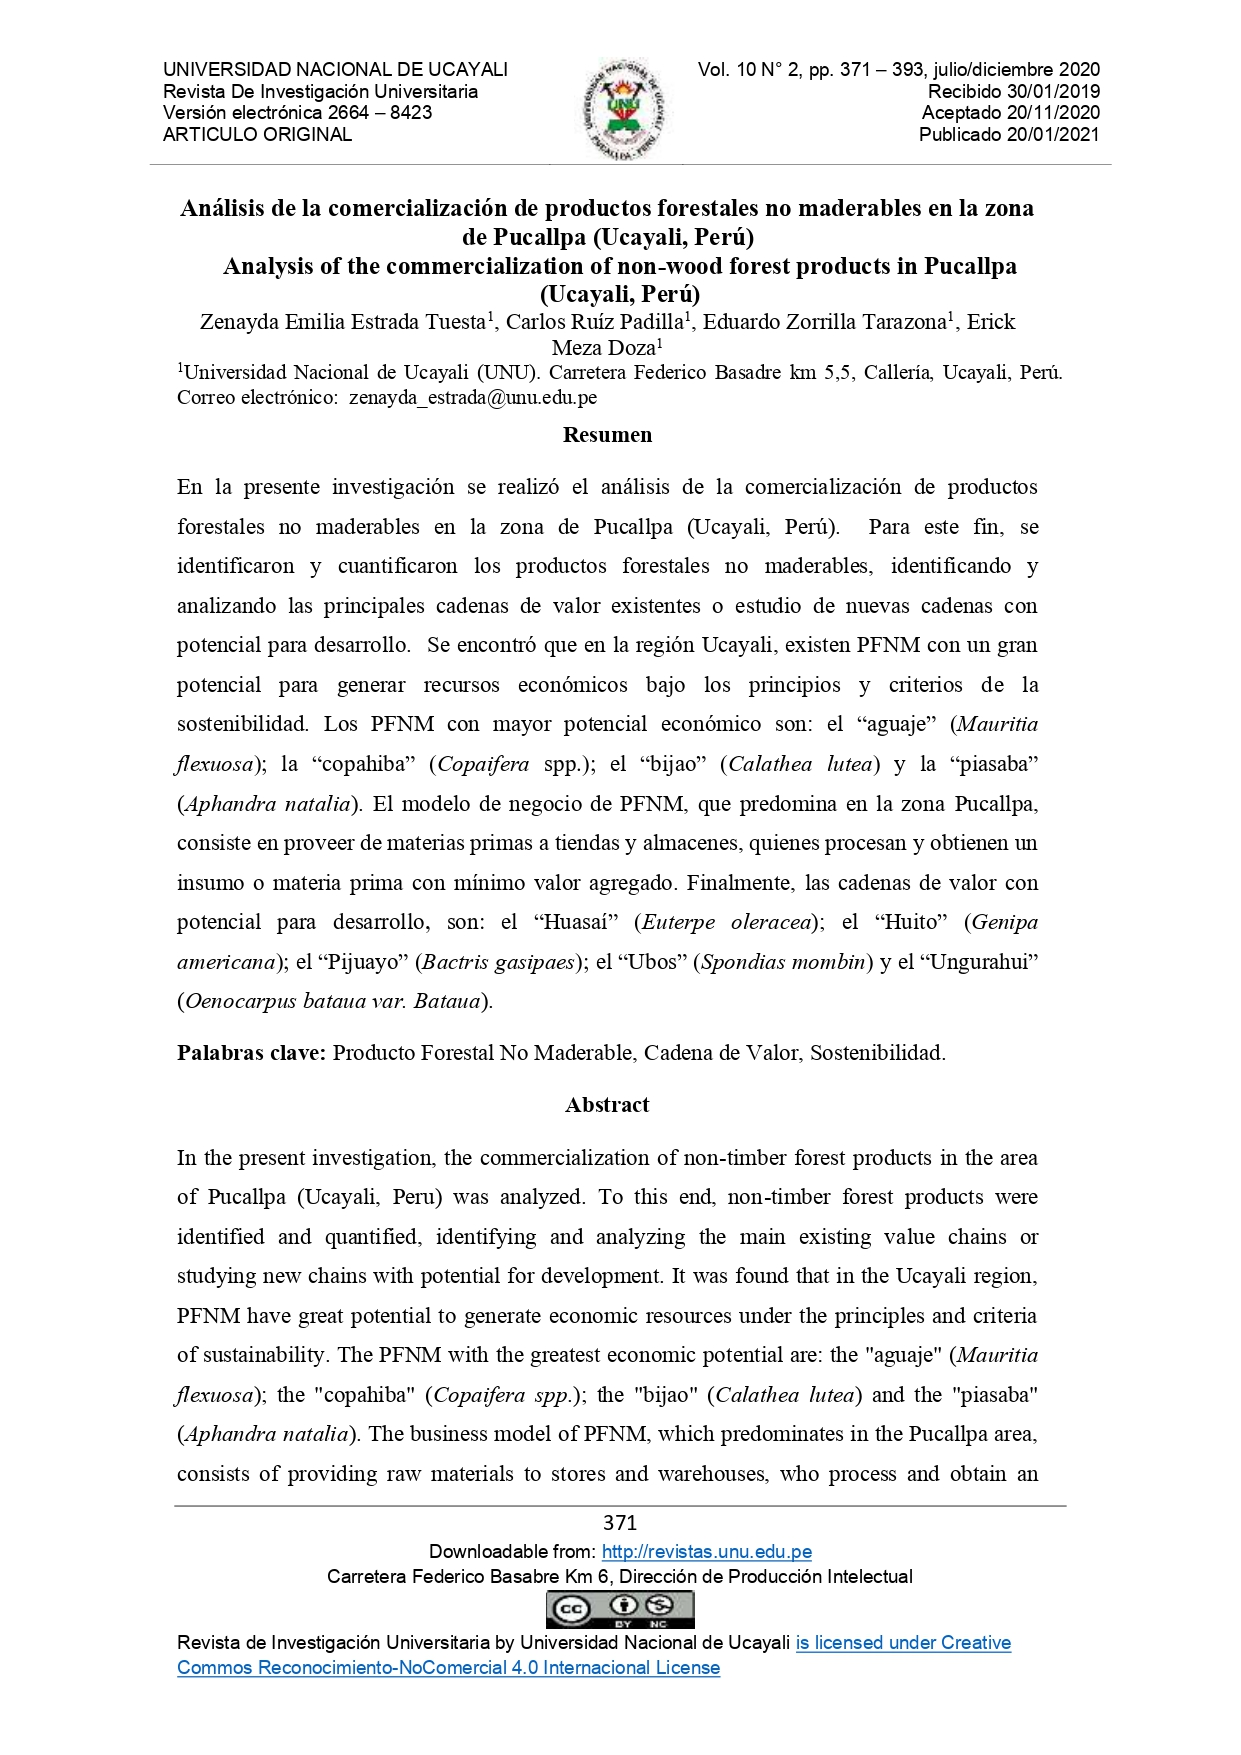 Análisis de la comercialización de productos forestales no maderables en la zona de Pucallpa (Ucayali, Perú)